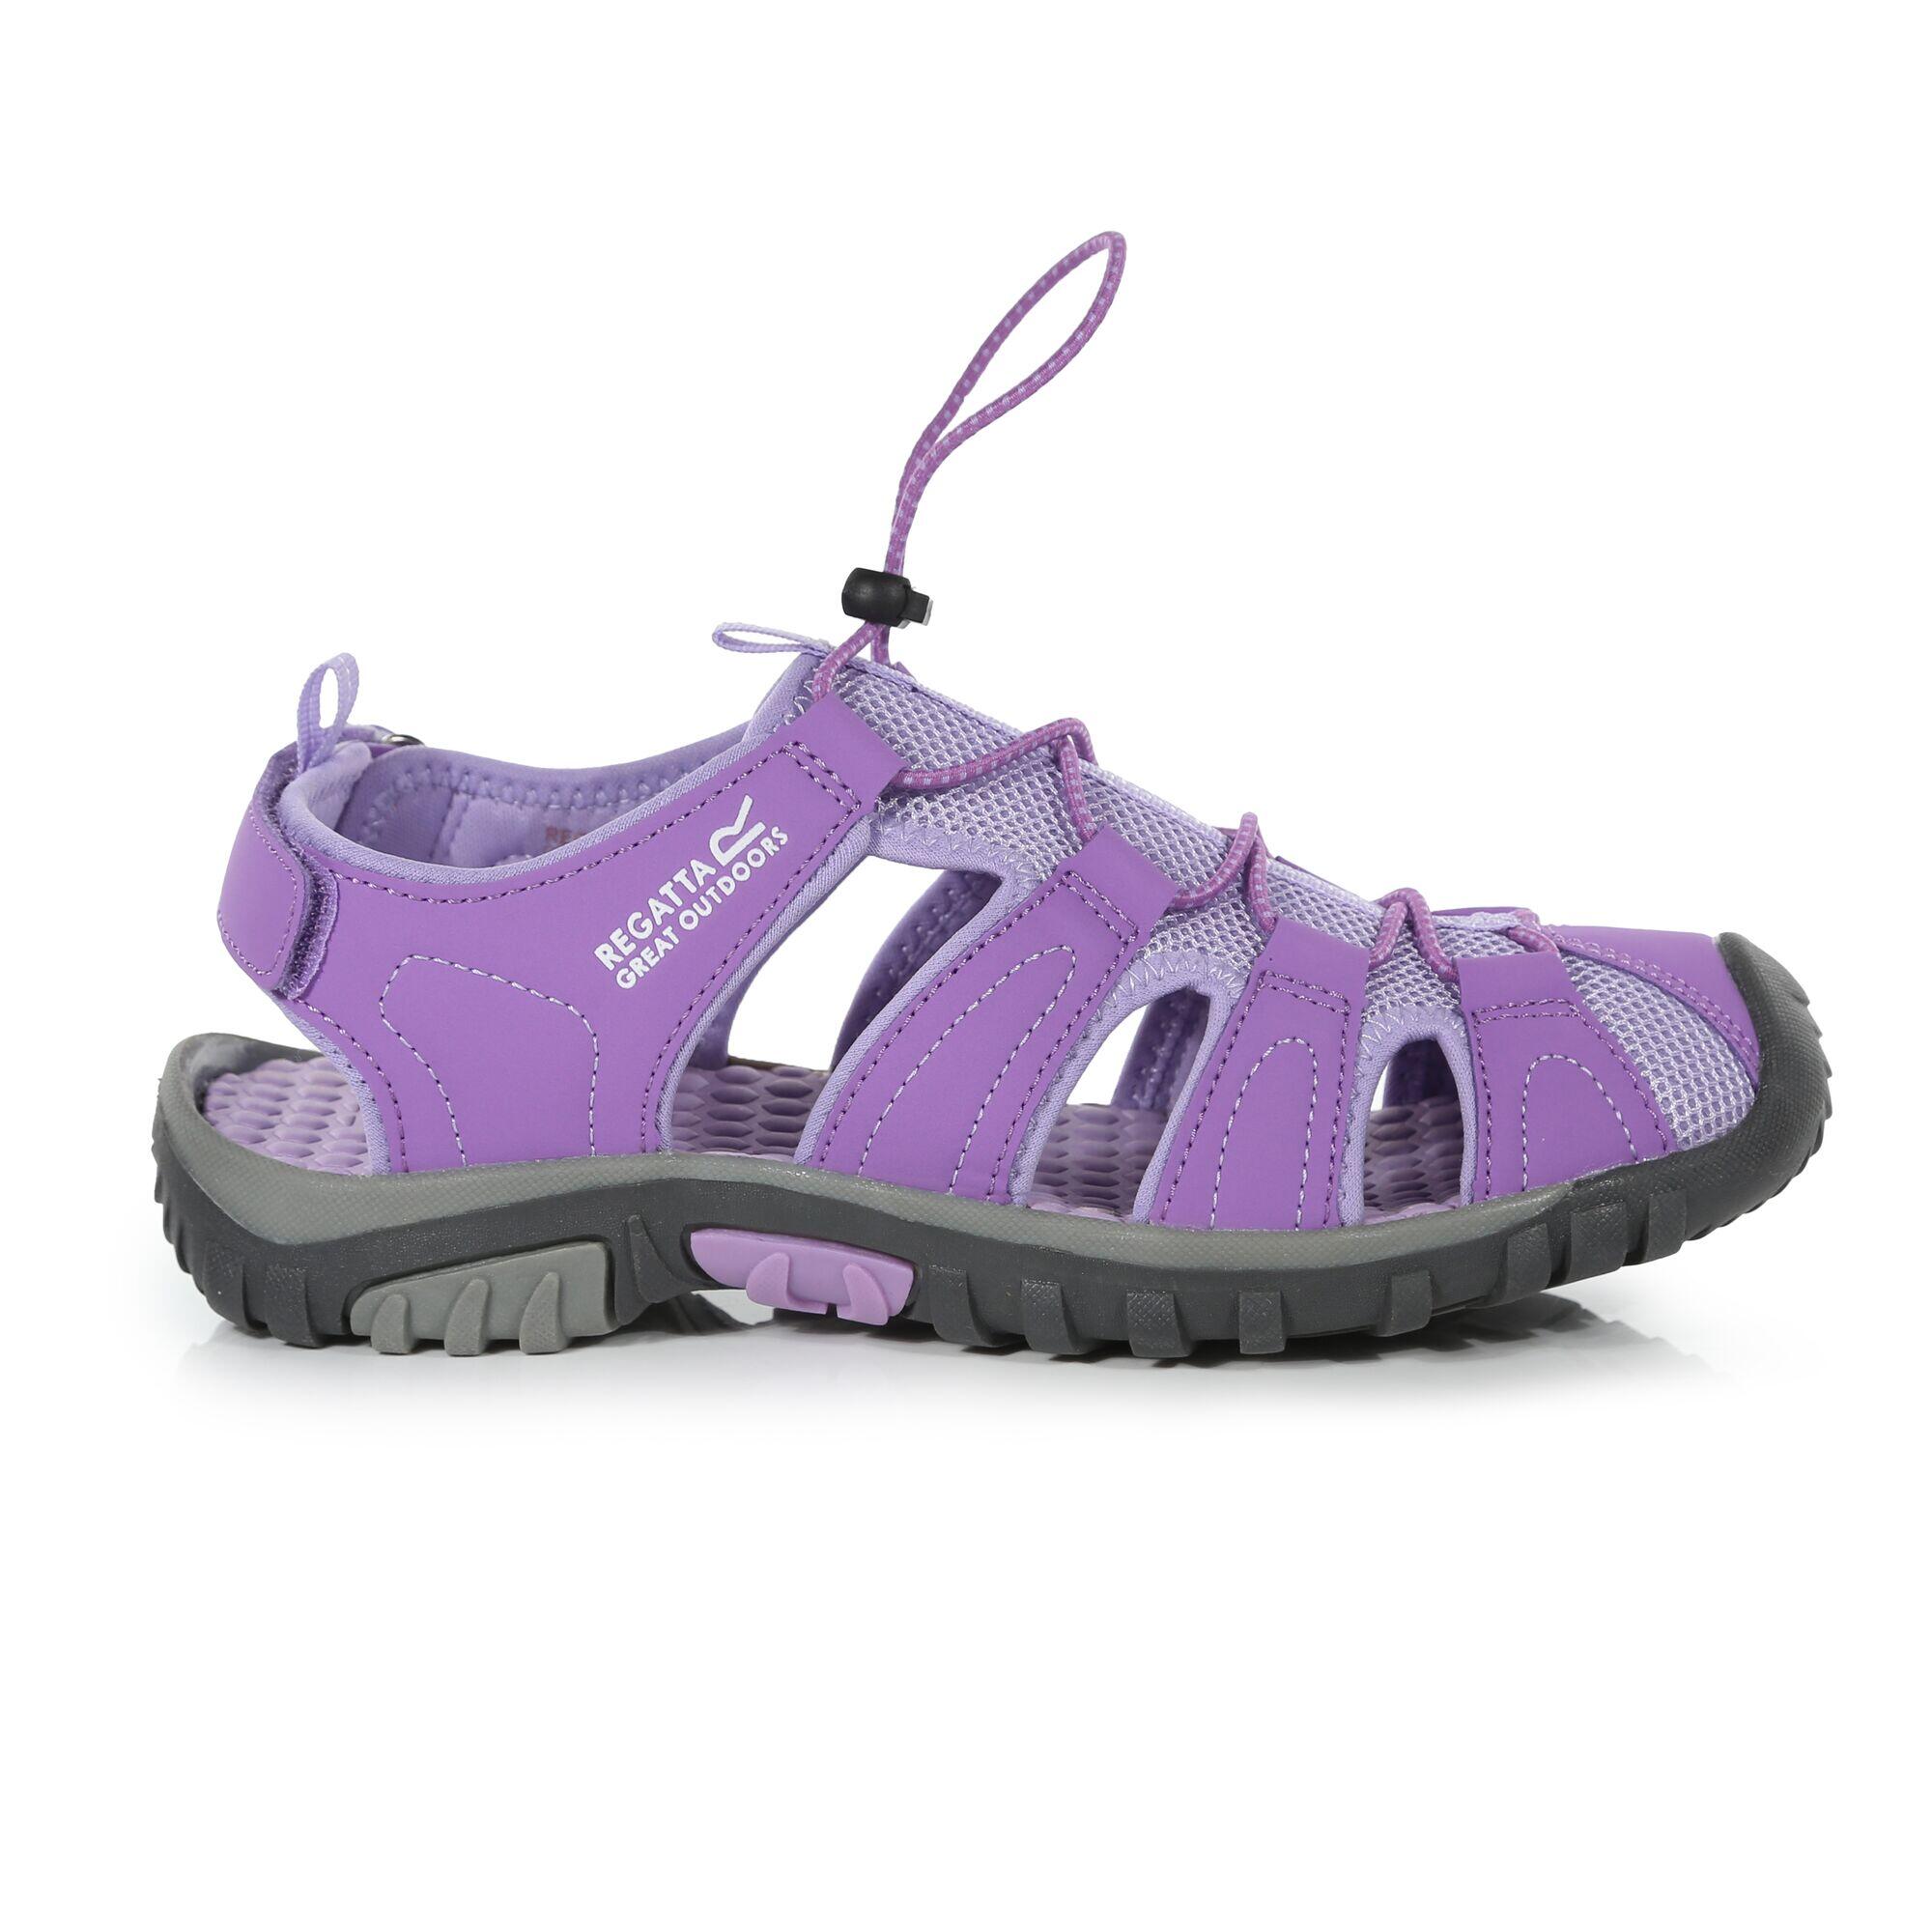 Westshore Junior Kids Walking Sandals - Purple Amethyst 1/5